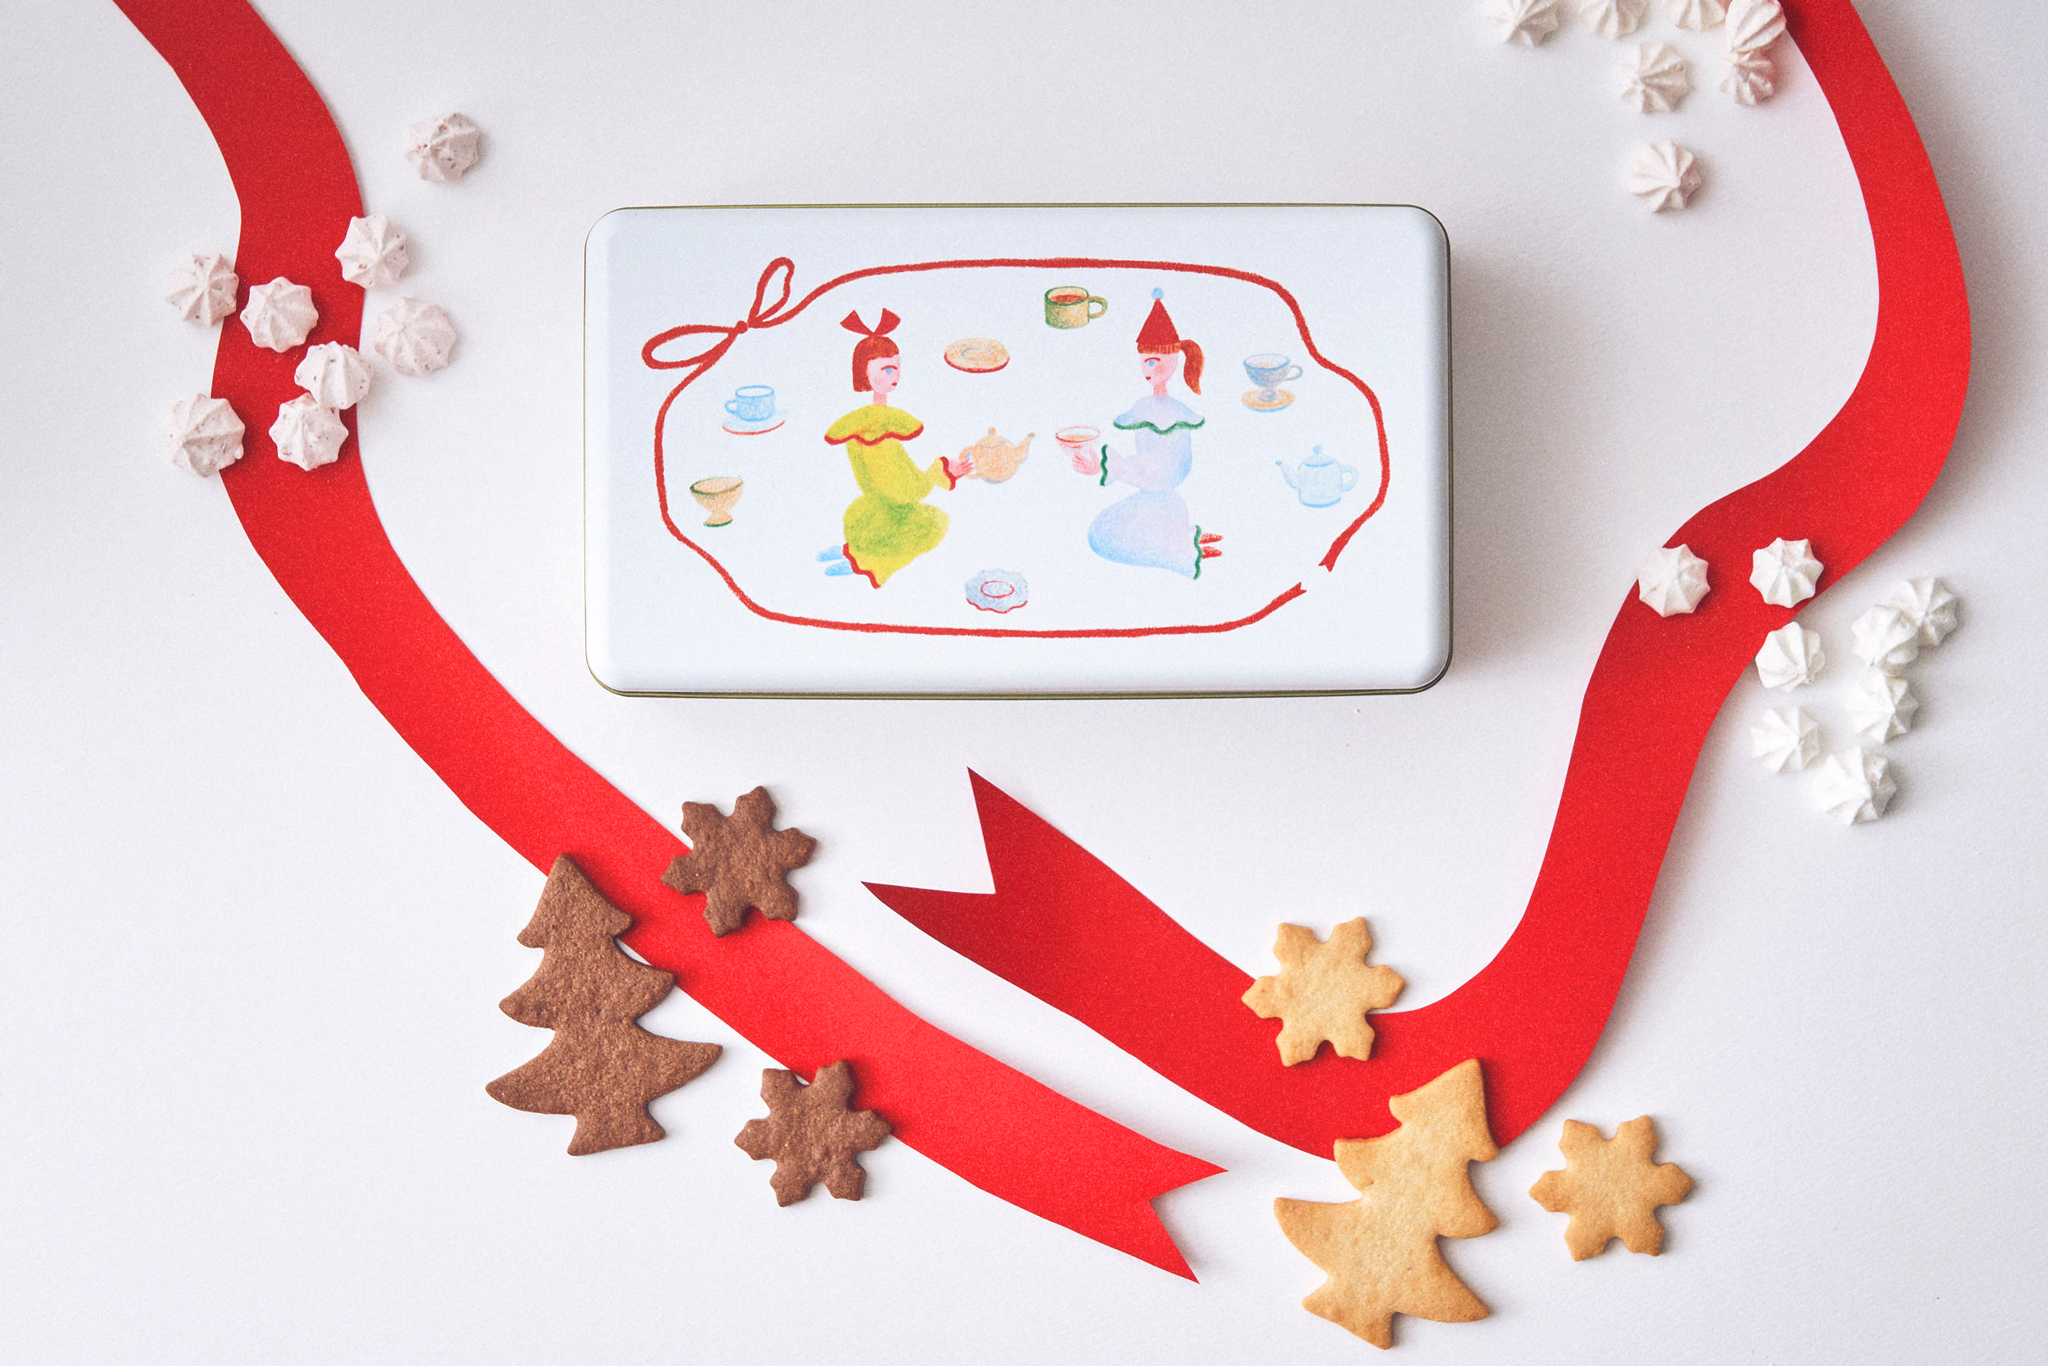 指おり数えるクリスマスお菓子「カドーノエル」新登場！こだわりメレンゲと発酵バタービスケットを詰めた、クリスマスまでの毎日の楽しみ分かち合う絵本のようなお菓子缶のサブ画像7